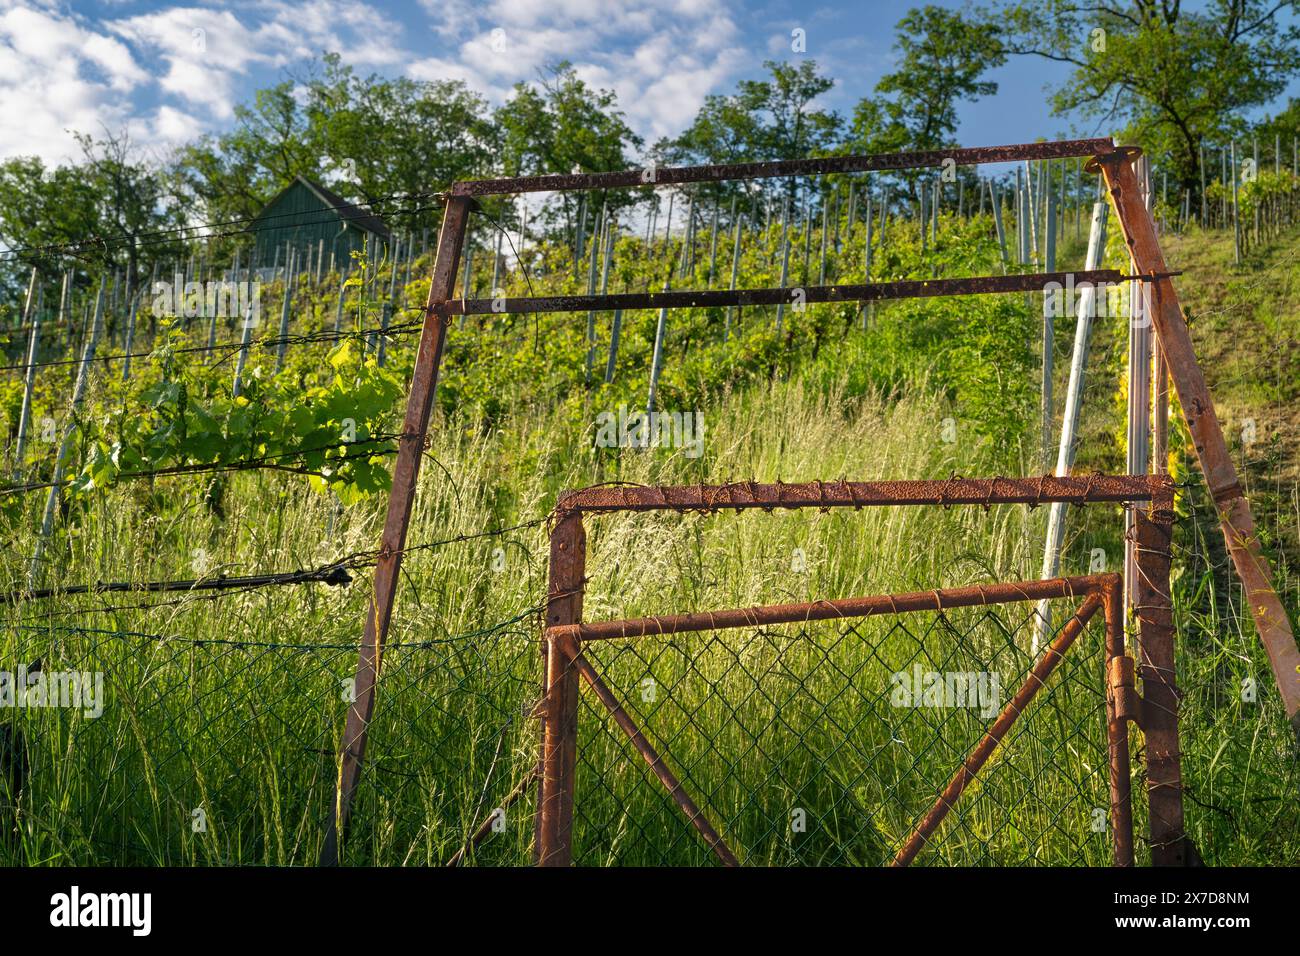 Porte en métal rouillé sur un vignoble au printemps - prise près de Stuttgart, Allemagne. Banque D'Images